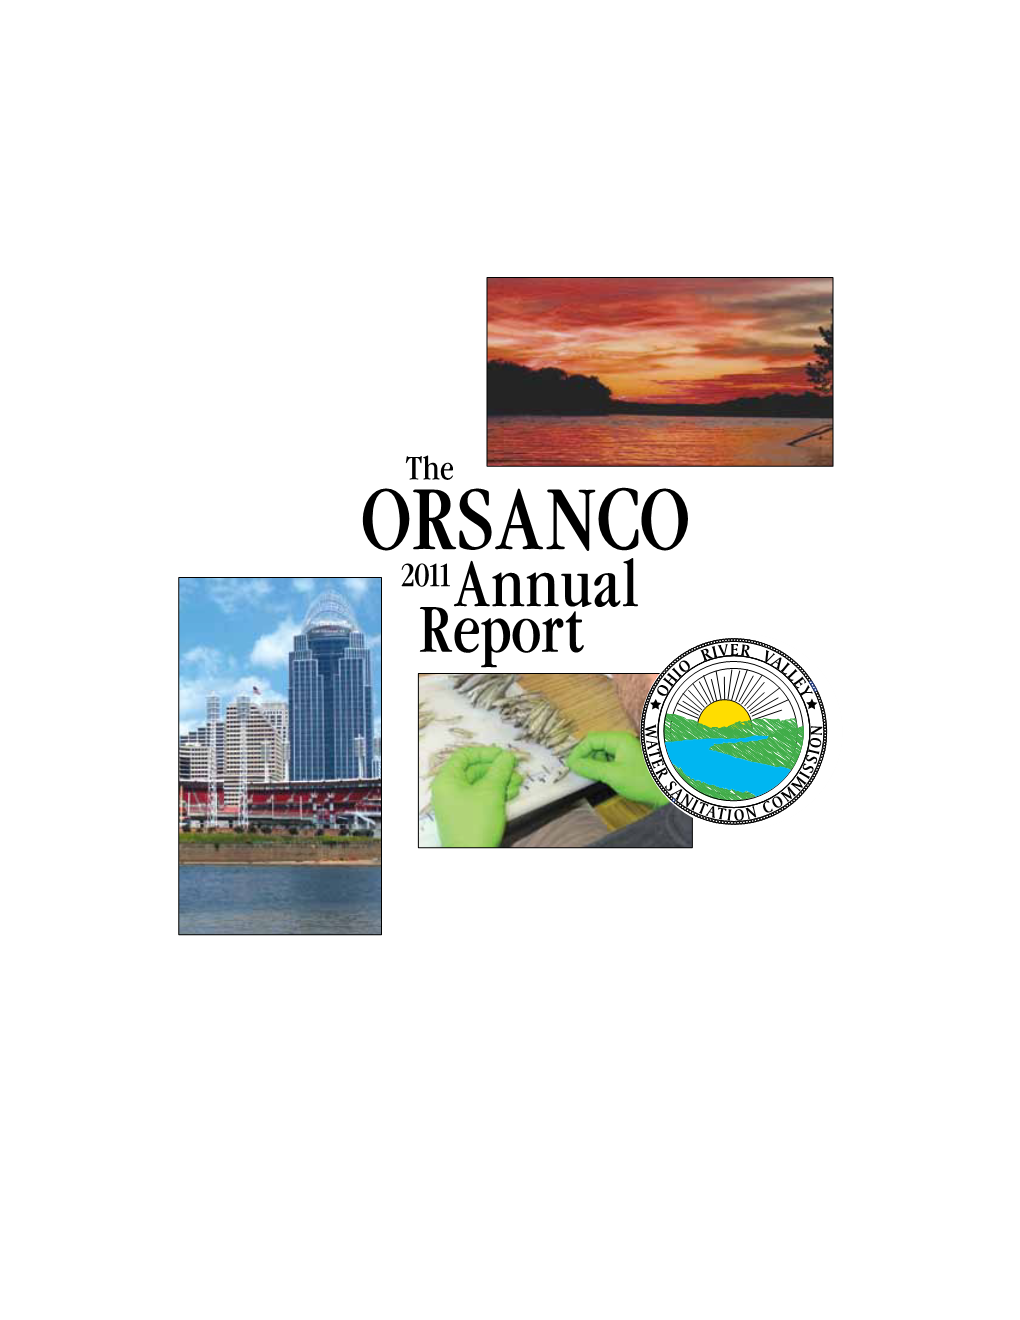 ORSANCO Annual Report 2011